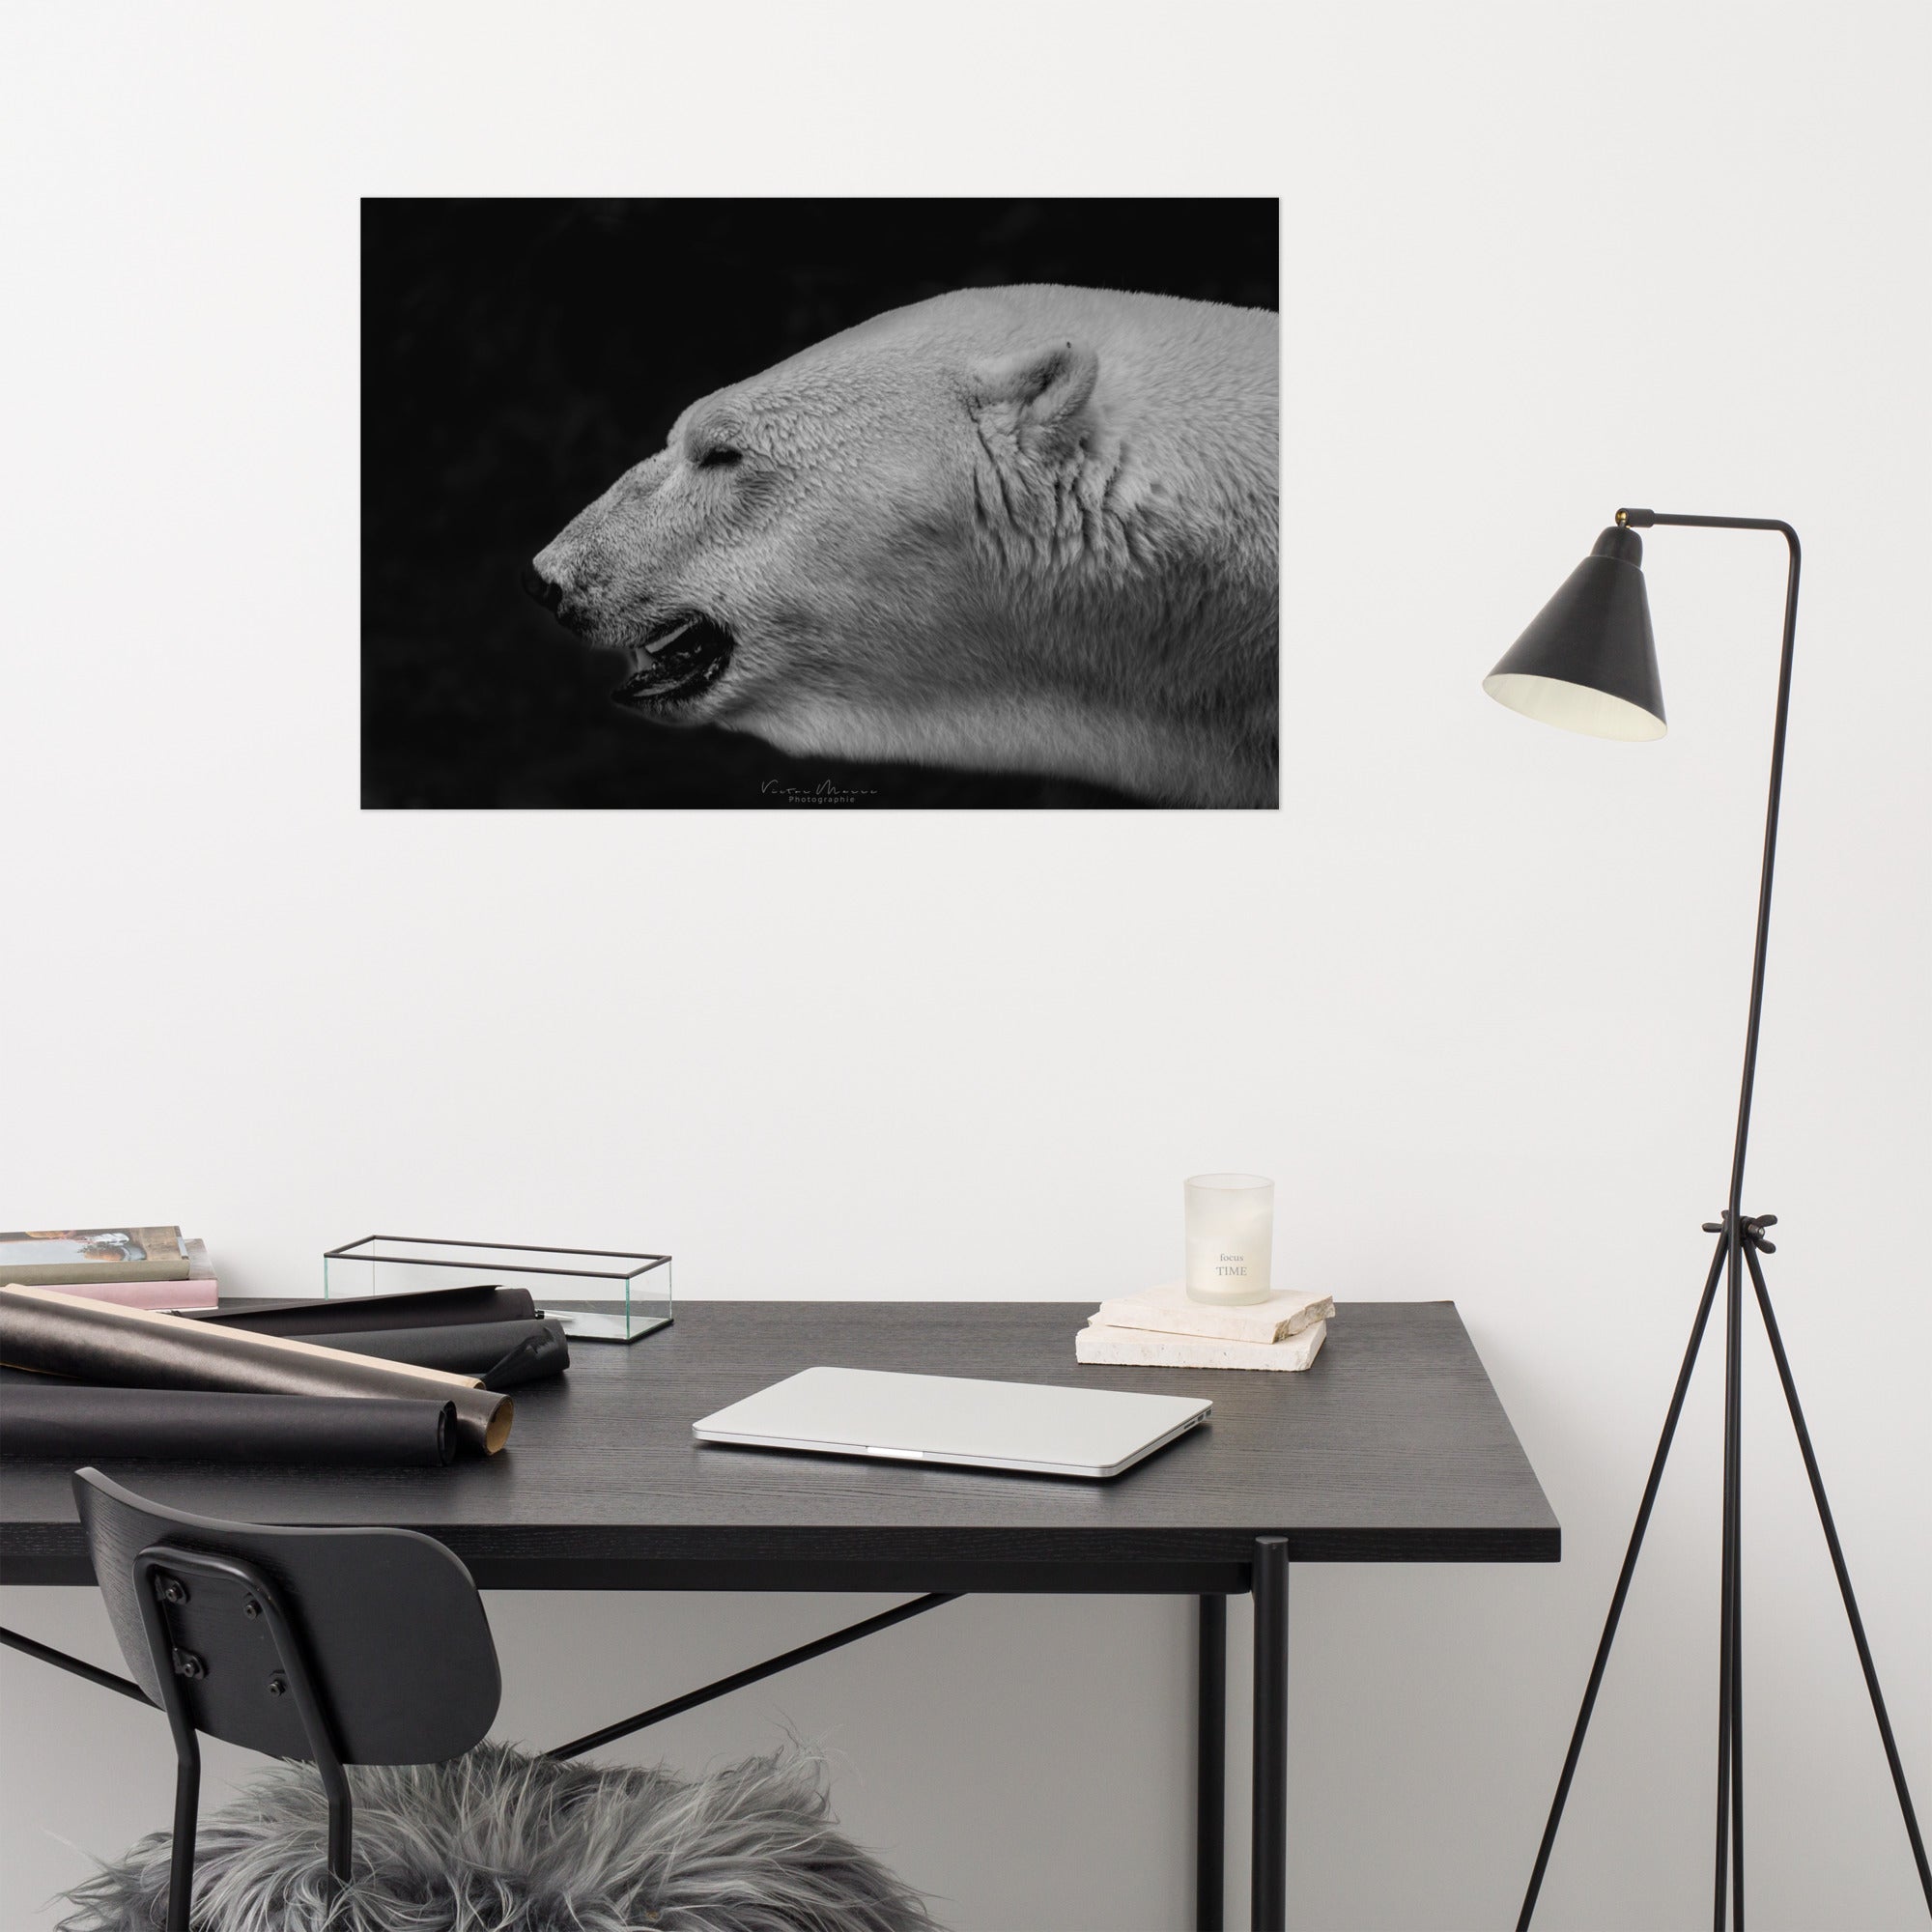 Portrait 'The White', capturant l'élégance et la puissance tranquille d'un ours polaire, son pelage blanc vibrant contrastant de manière saisissante avec un arrière-plan noir profond, créé par la photographe Victor Marre.